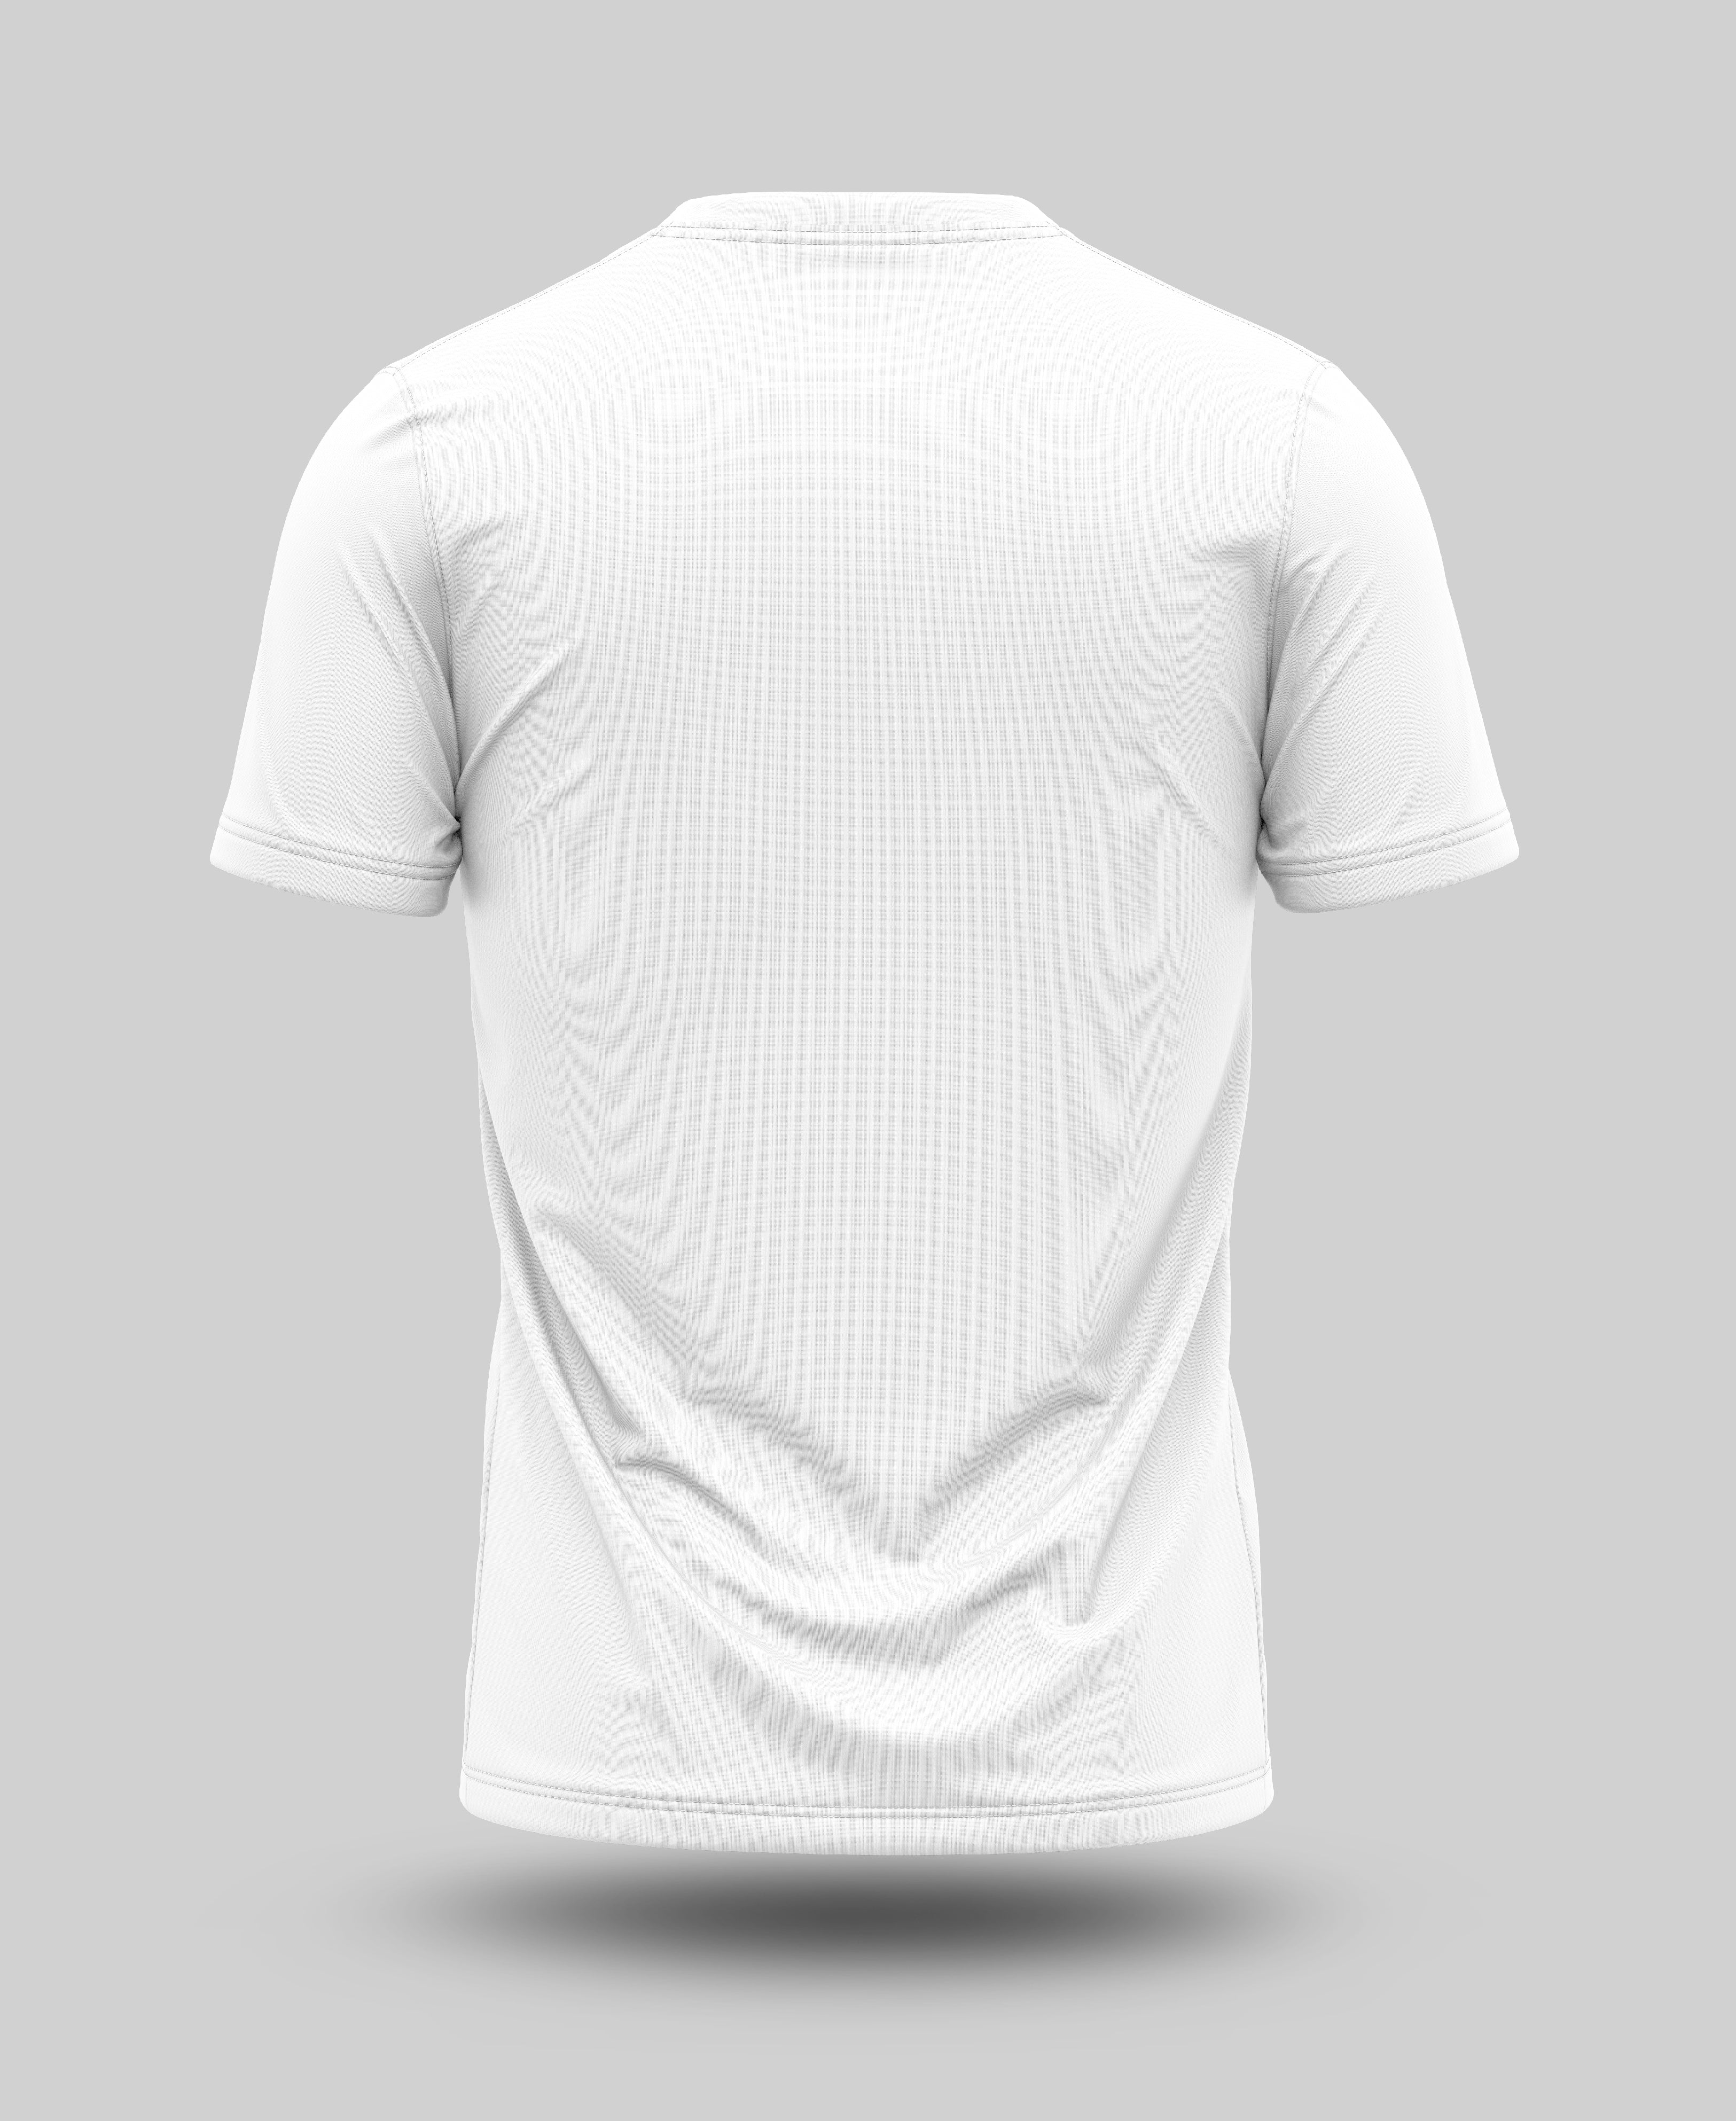 Turbocharged White T-Shirt